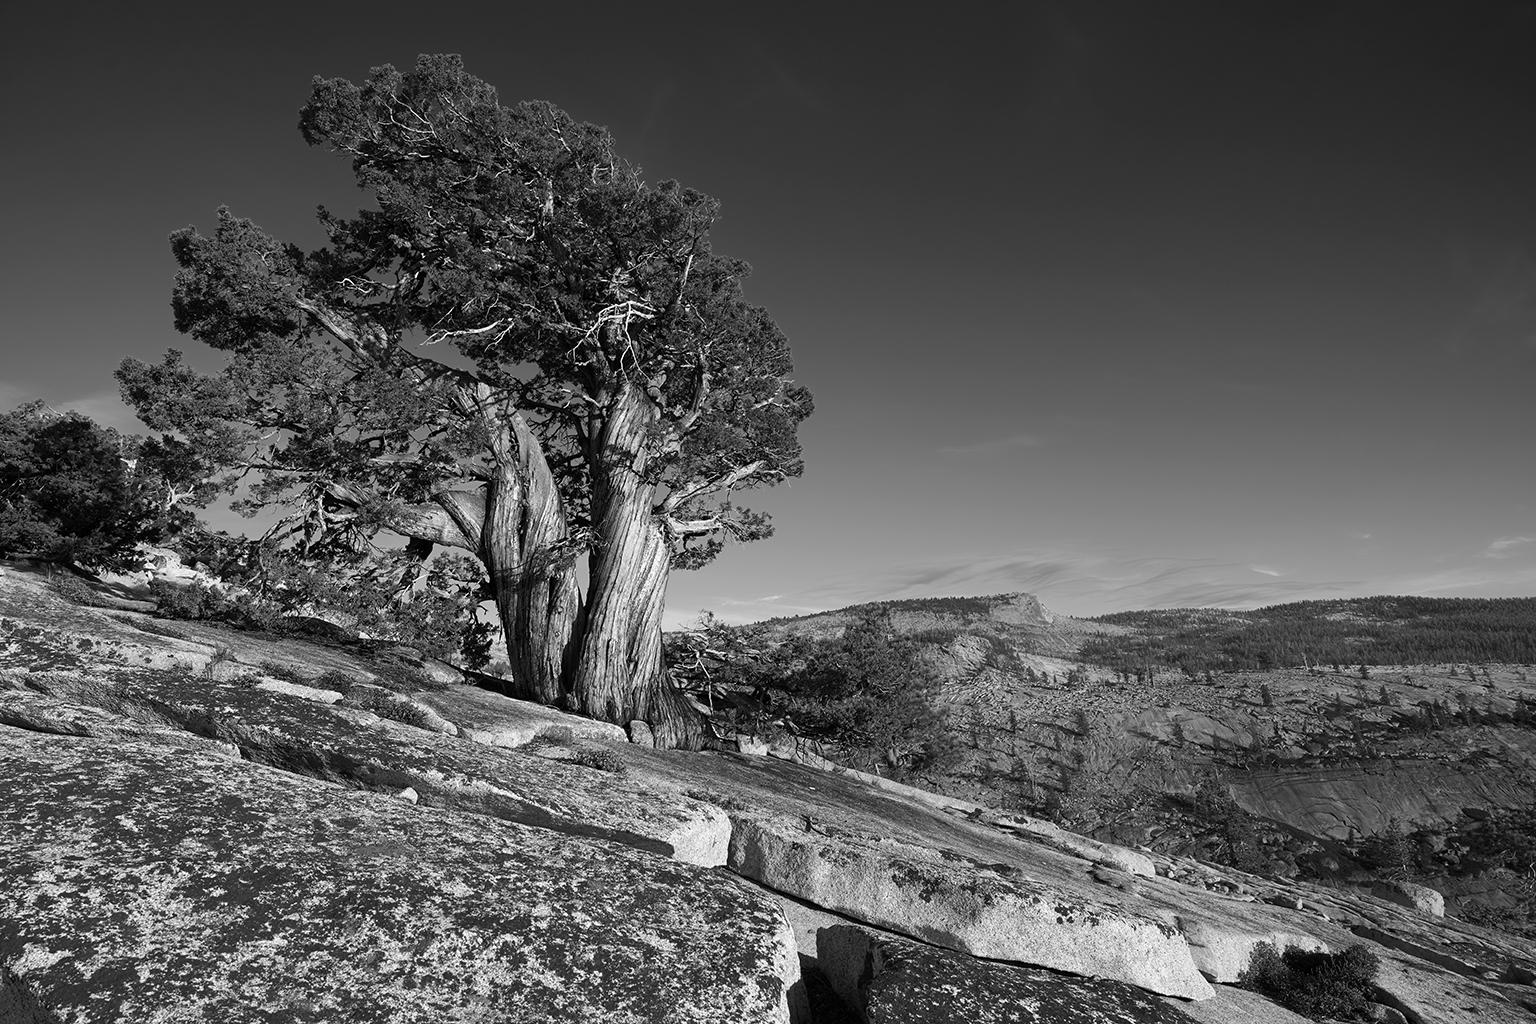 Tree Study II – Großformatige Fotografie einer dramatischen Berglandschaft (Zeitgenössisch), Photograph, von Frank Schott